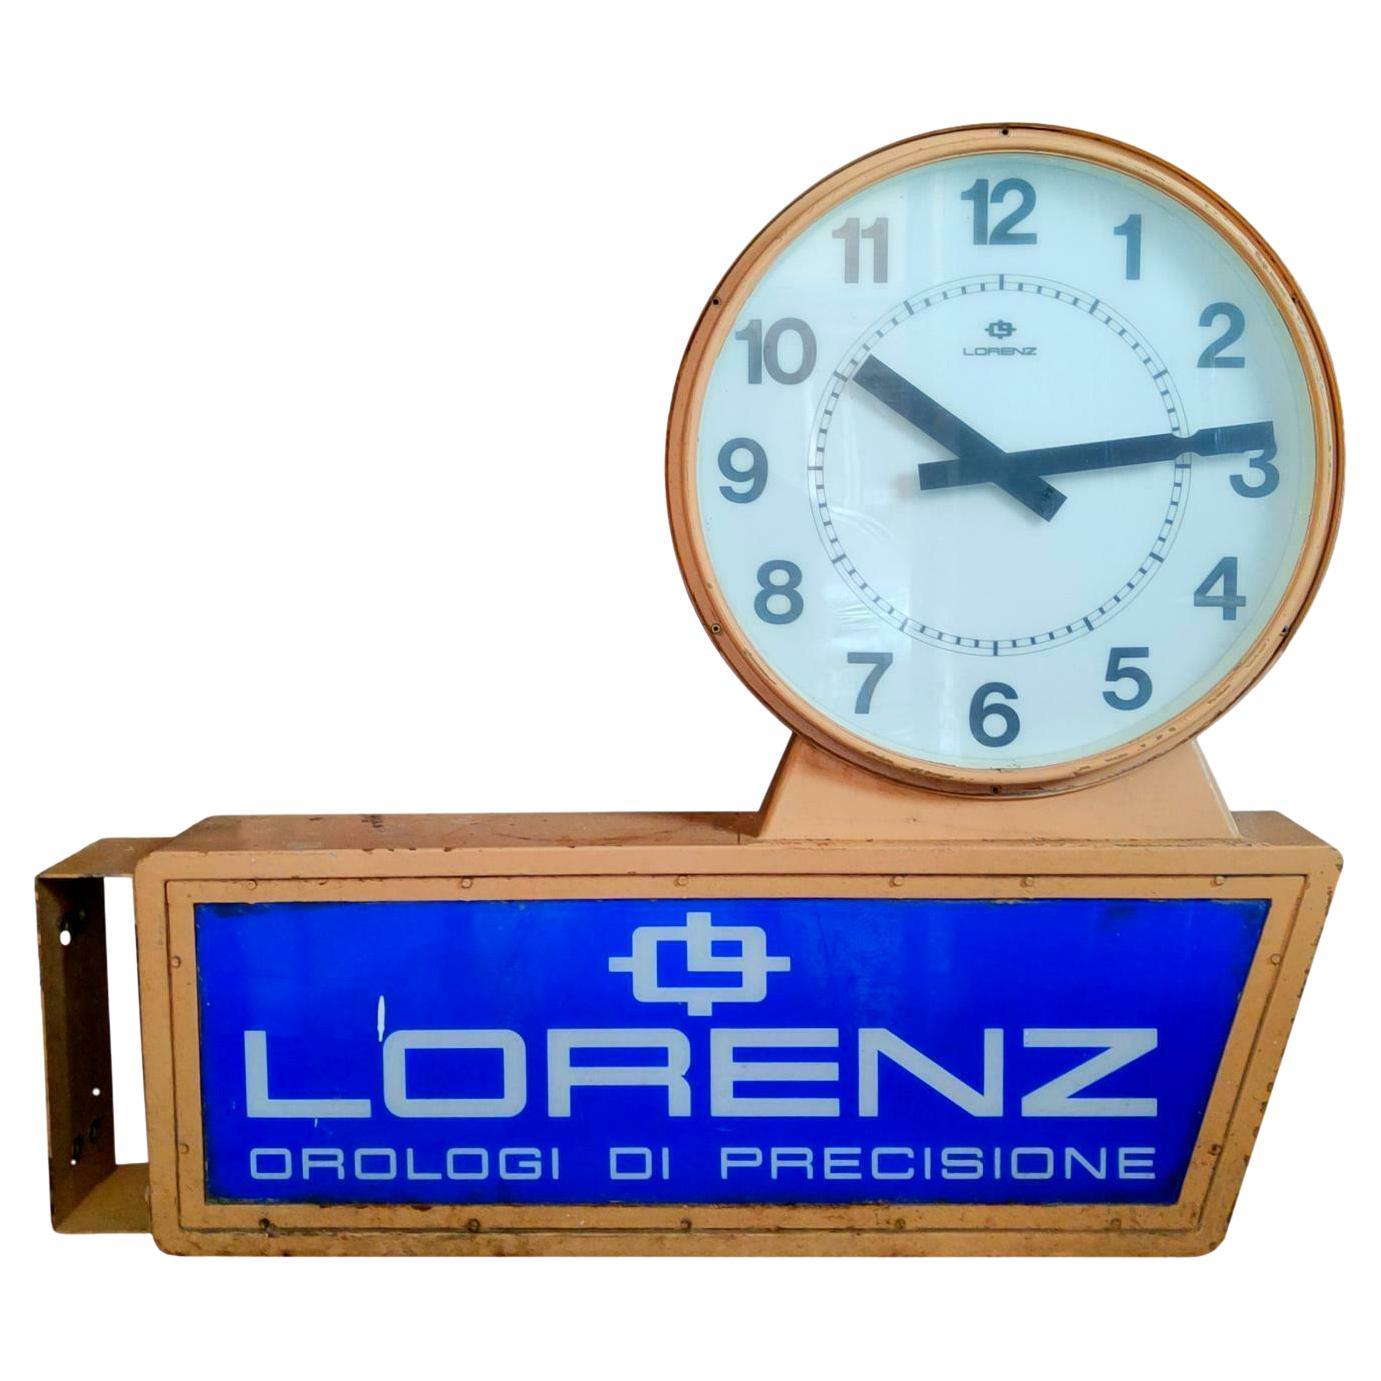 Große doppelseitige Werbe- Straßenuhr „Lorenz““, 1960er Jahre